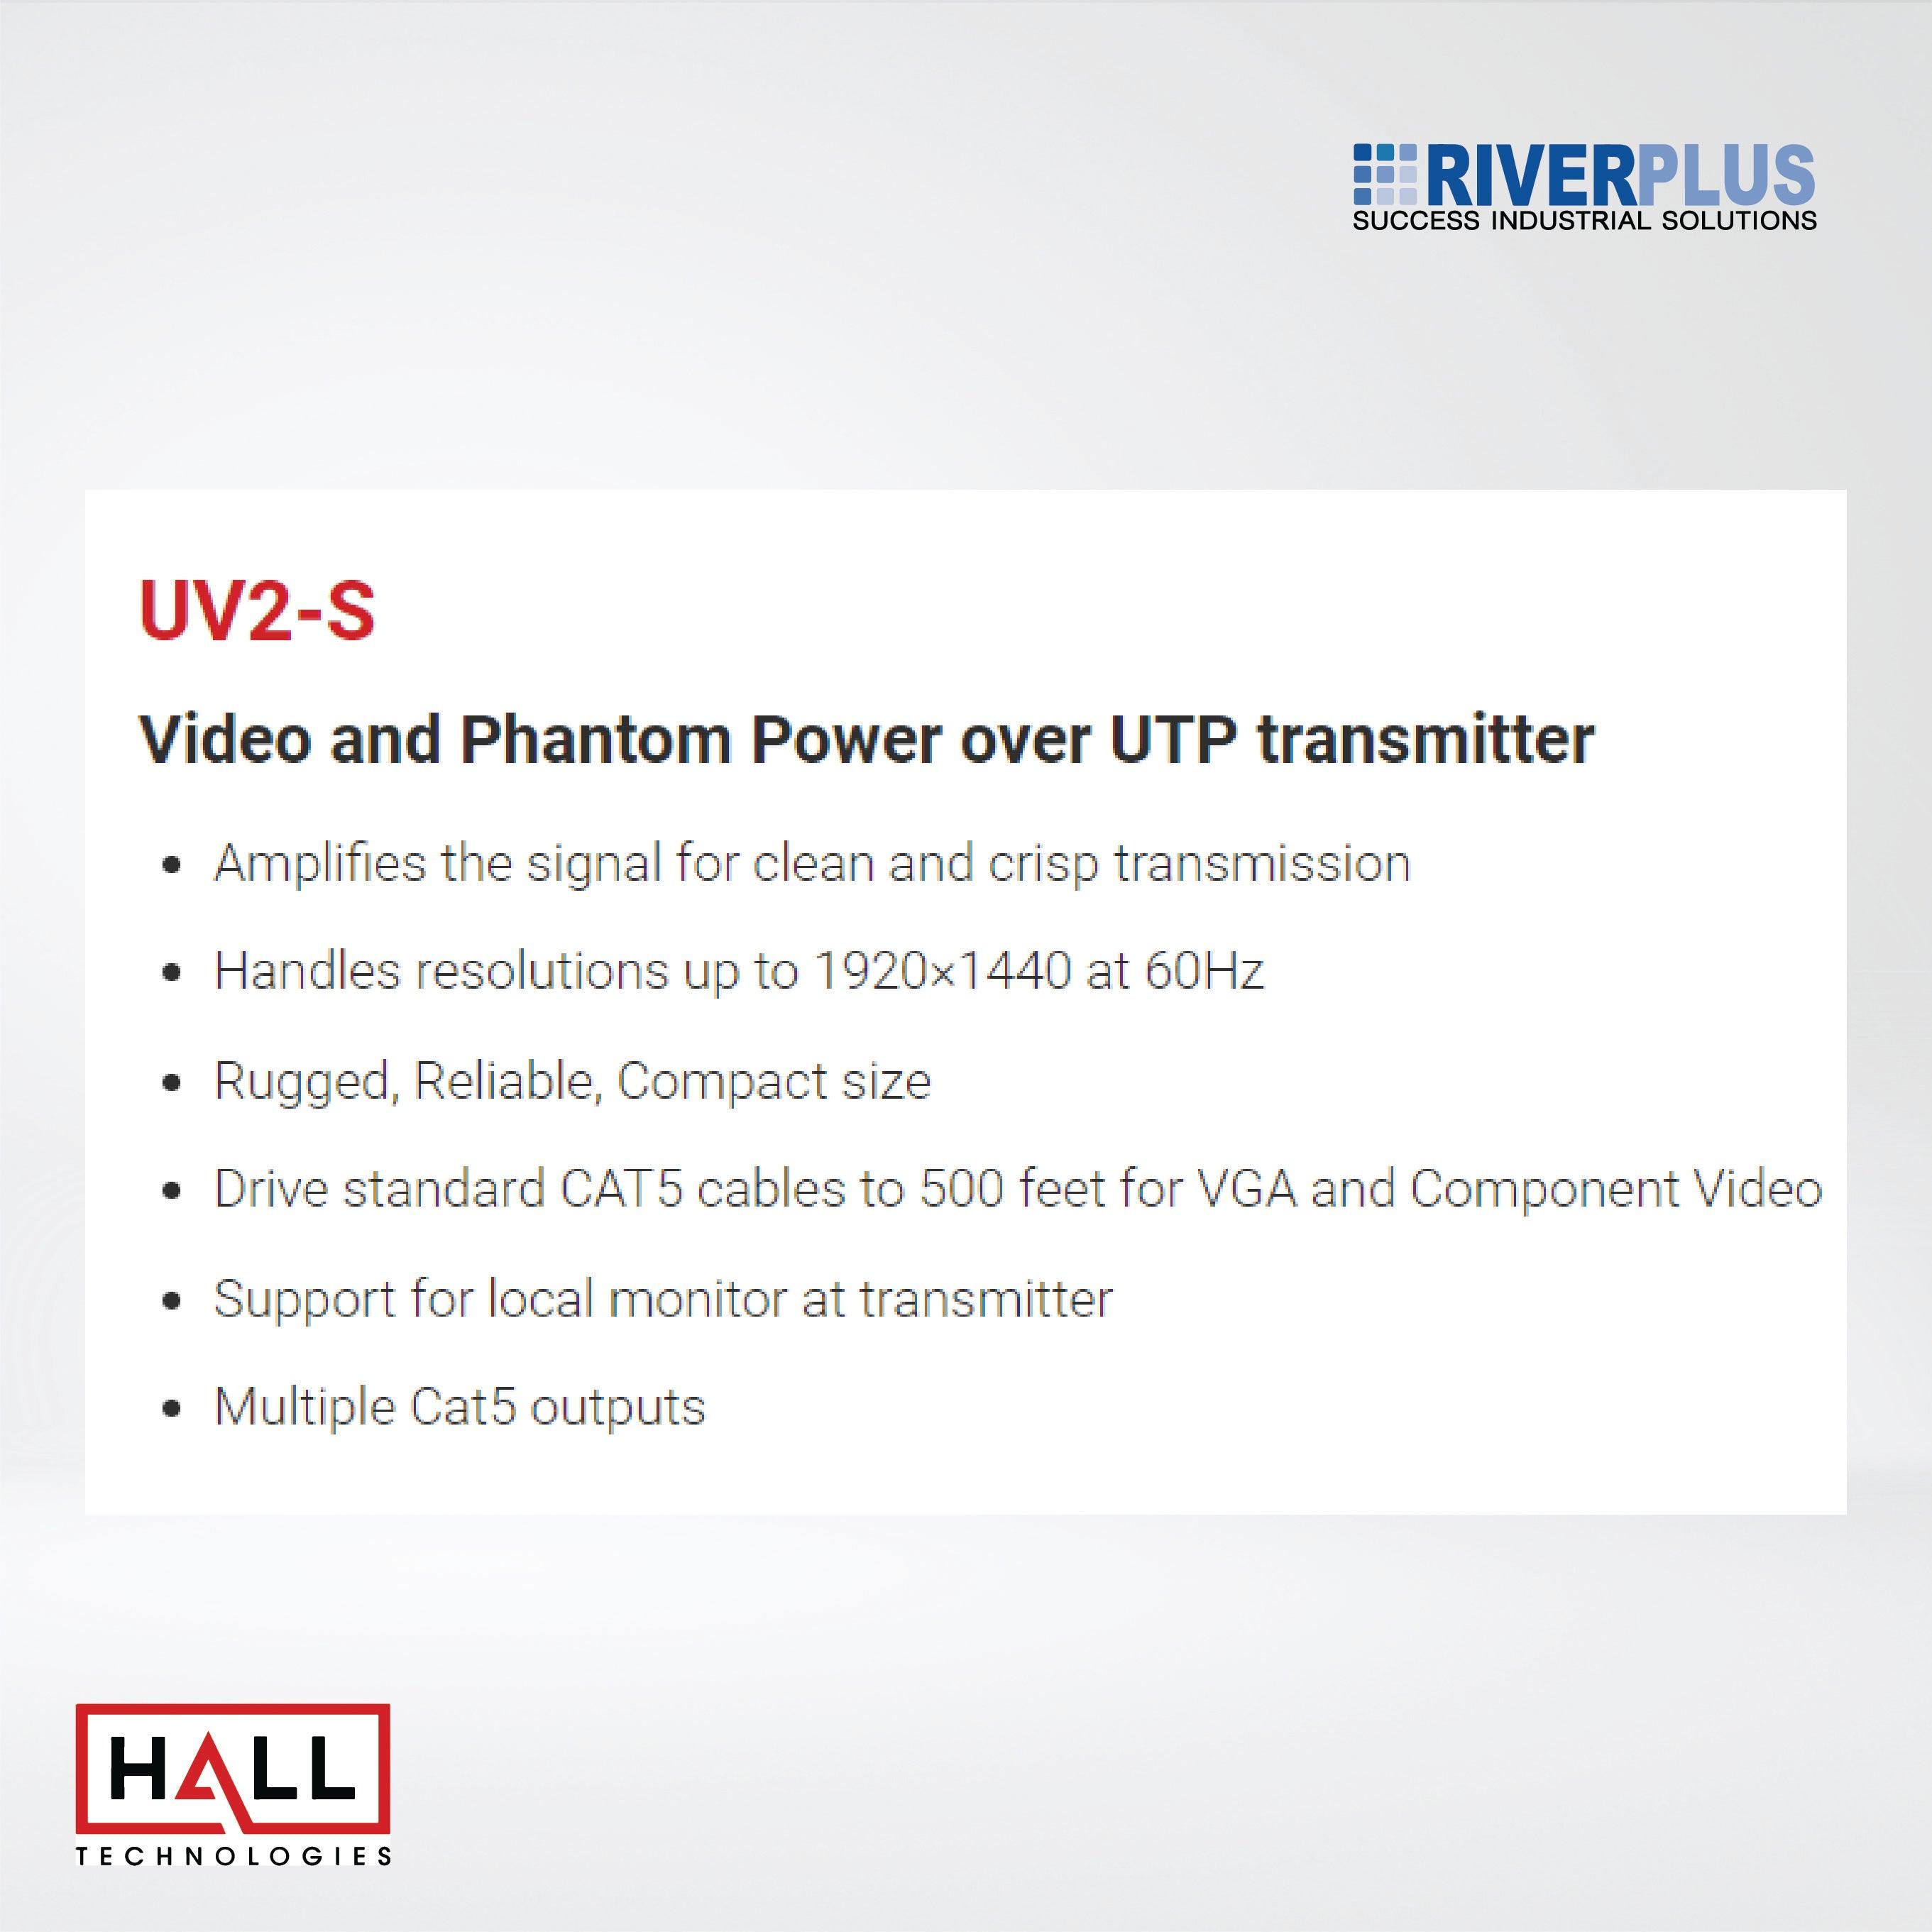 UV2-S Video and Phantom Power over UTP transmitter - Riverplus